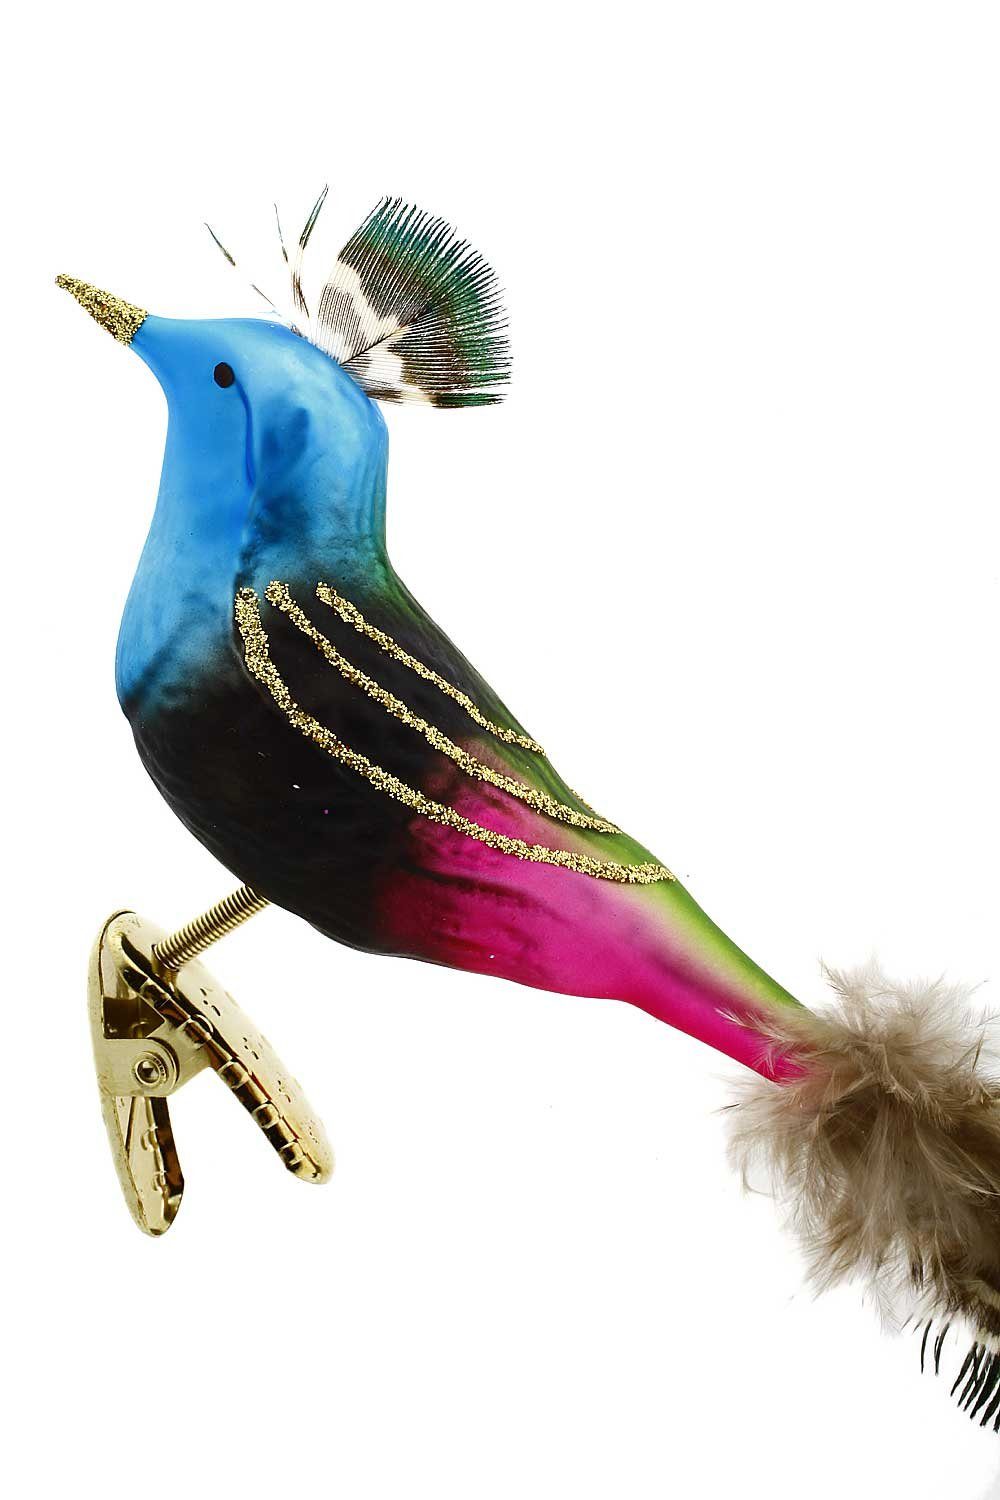 - mundgeblasen Christbaumschmuck Inge-Glas® Bird handdekoriert Dekohänger - Manufaktur Gefiederte Freunde, Funky Hamburger Weihnachtskontor -